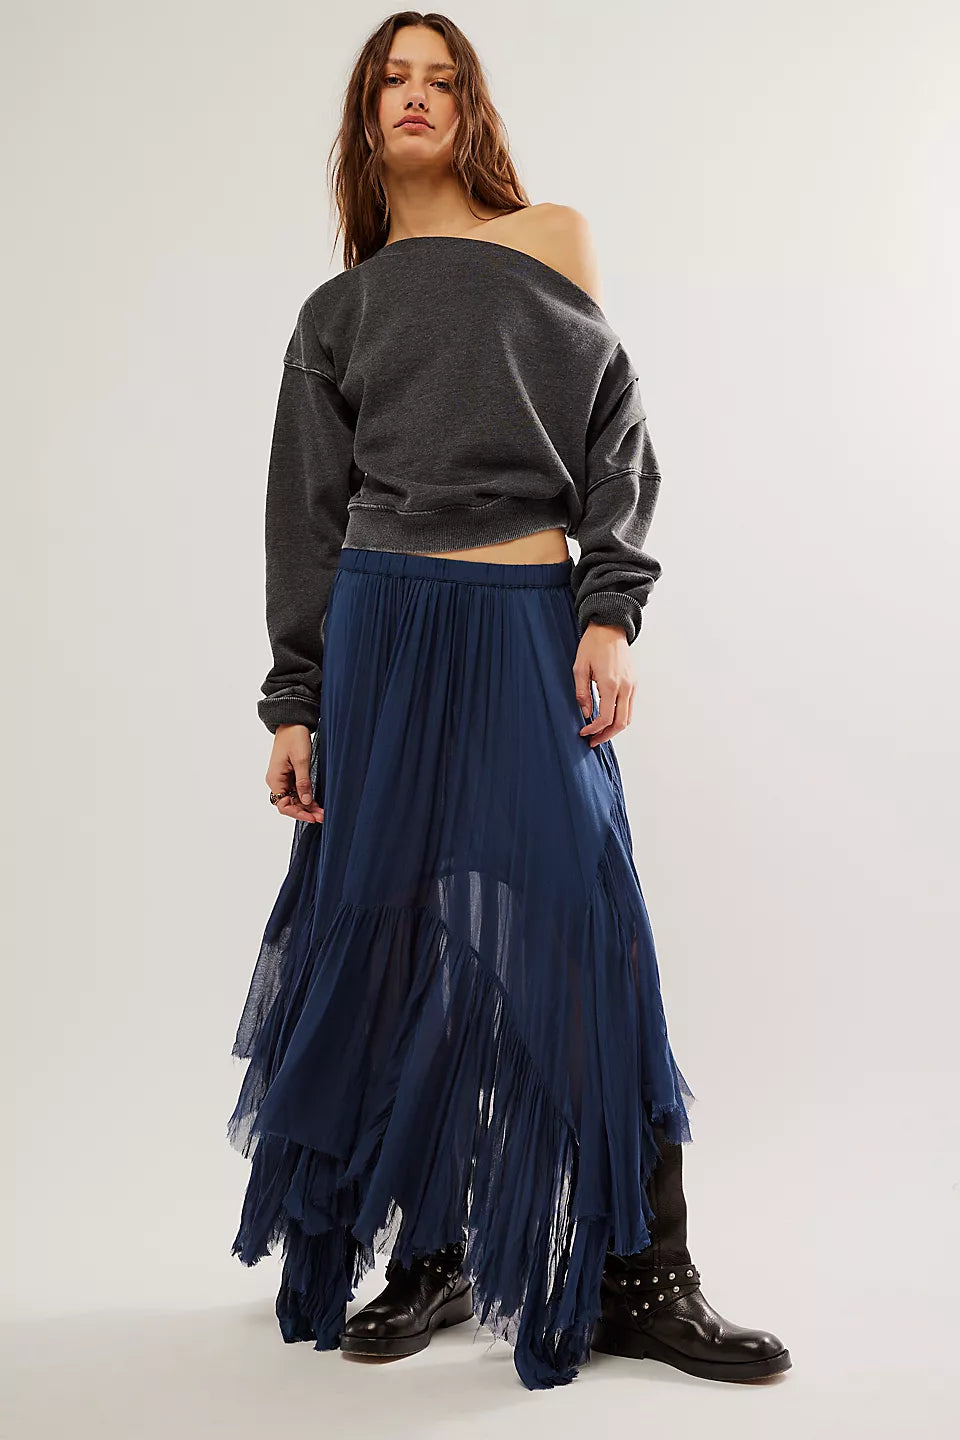 Clover Skirt